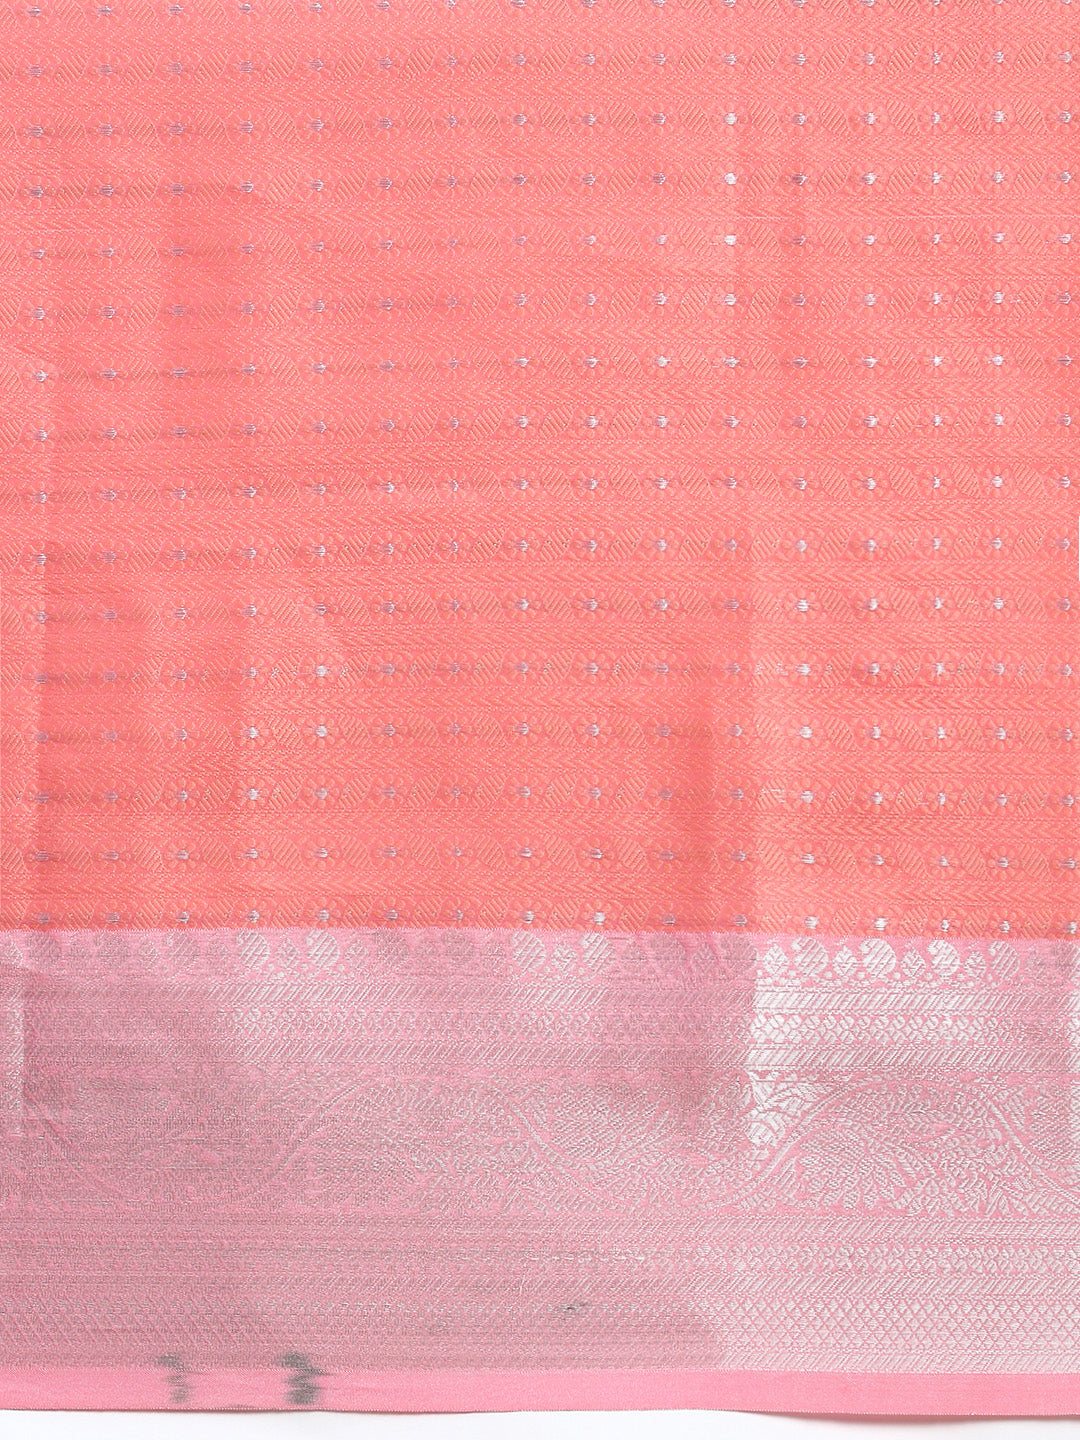 Semi Kora Cotton Allover Design Saree Pink with Silver Zari Border SKC02-Zoom view